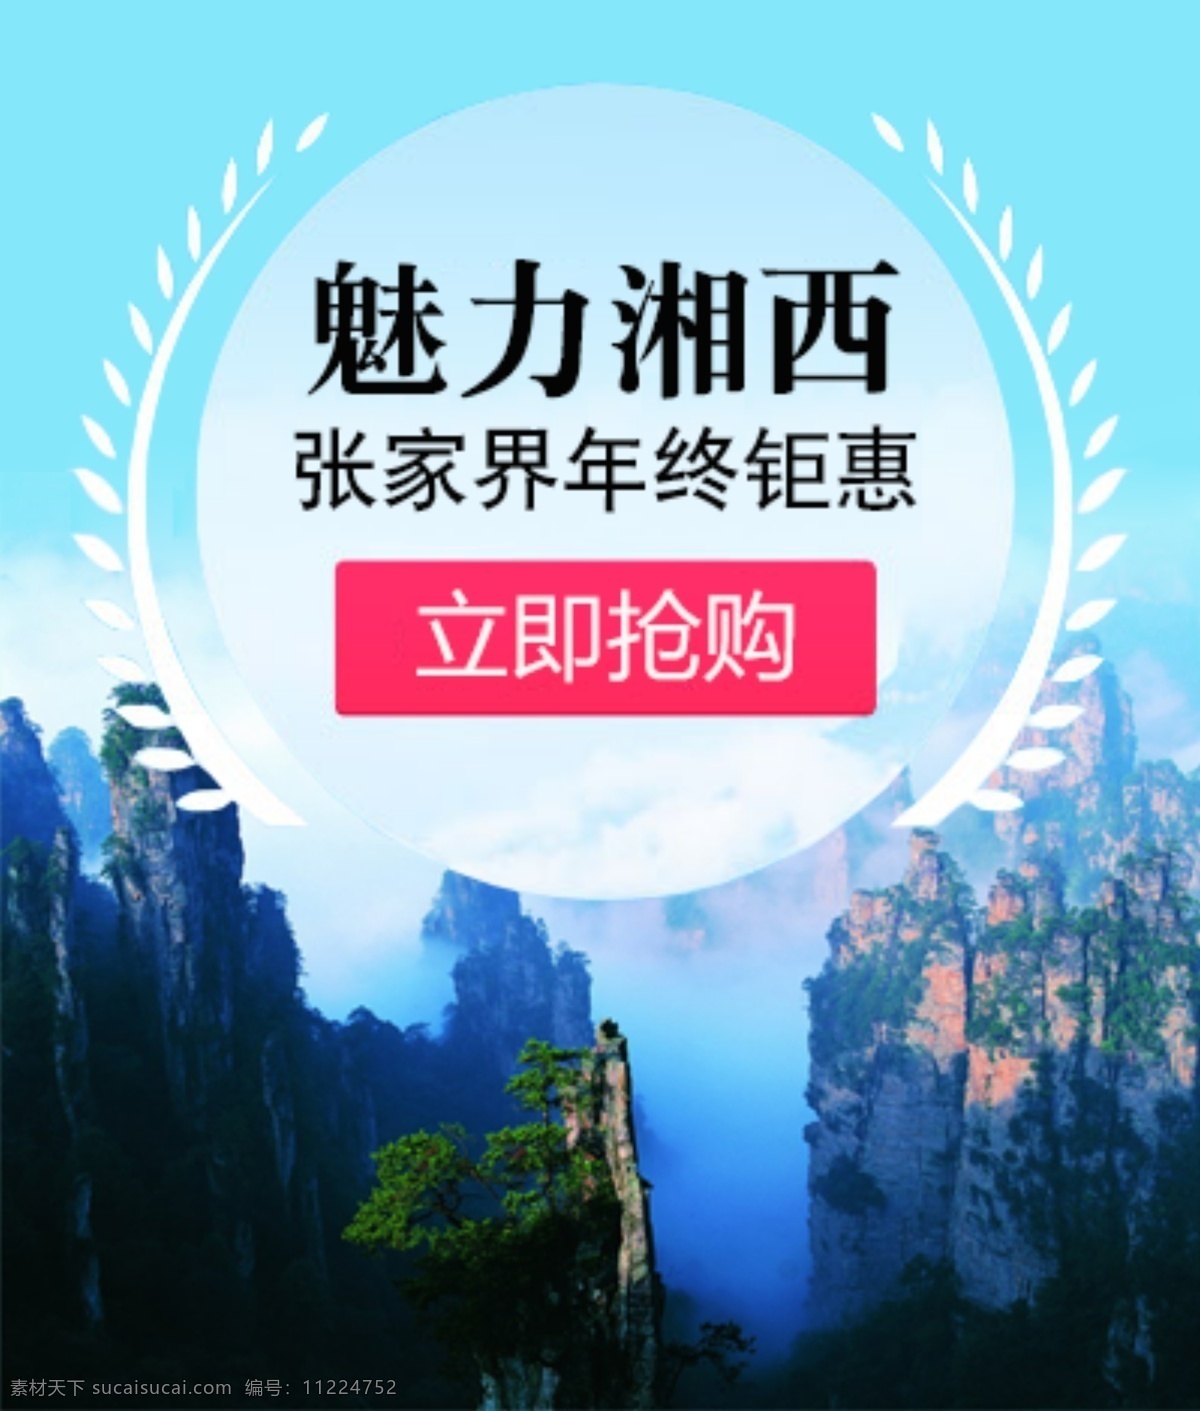 魅力 湘西旅游 立即抢购 首页图片 张家界 旅游图片 湘西广告宣传 网页素材 网页模板